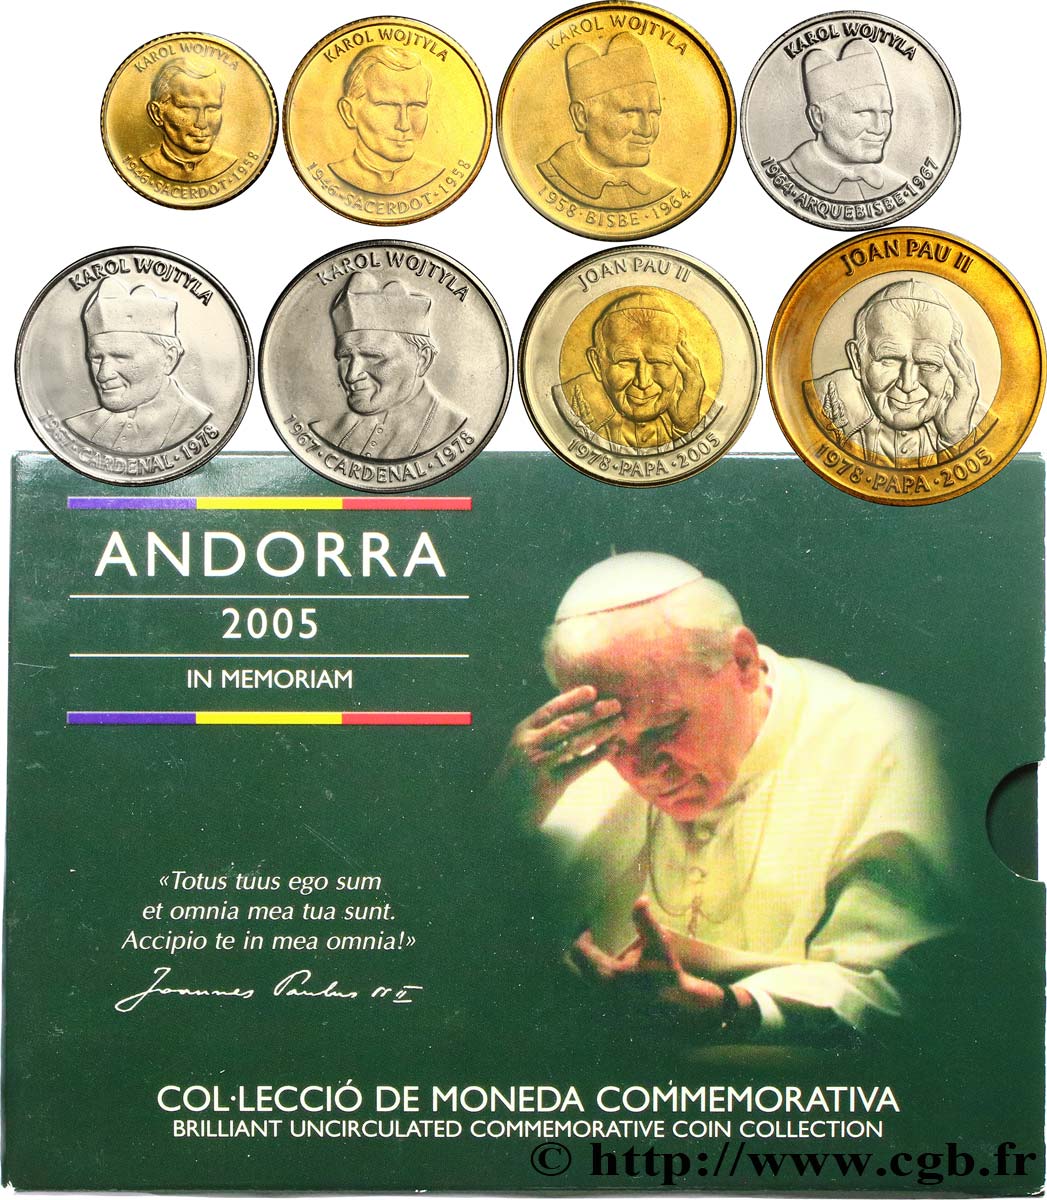 ANDORRA (PRINCIPALITY) SÉRIE Diner BRILLANT UNIVERSEL - Série commémorative en l’honneur du pape Jean-Paul II 2005  Brilliant Uncirculated 